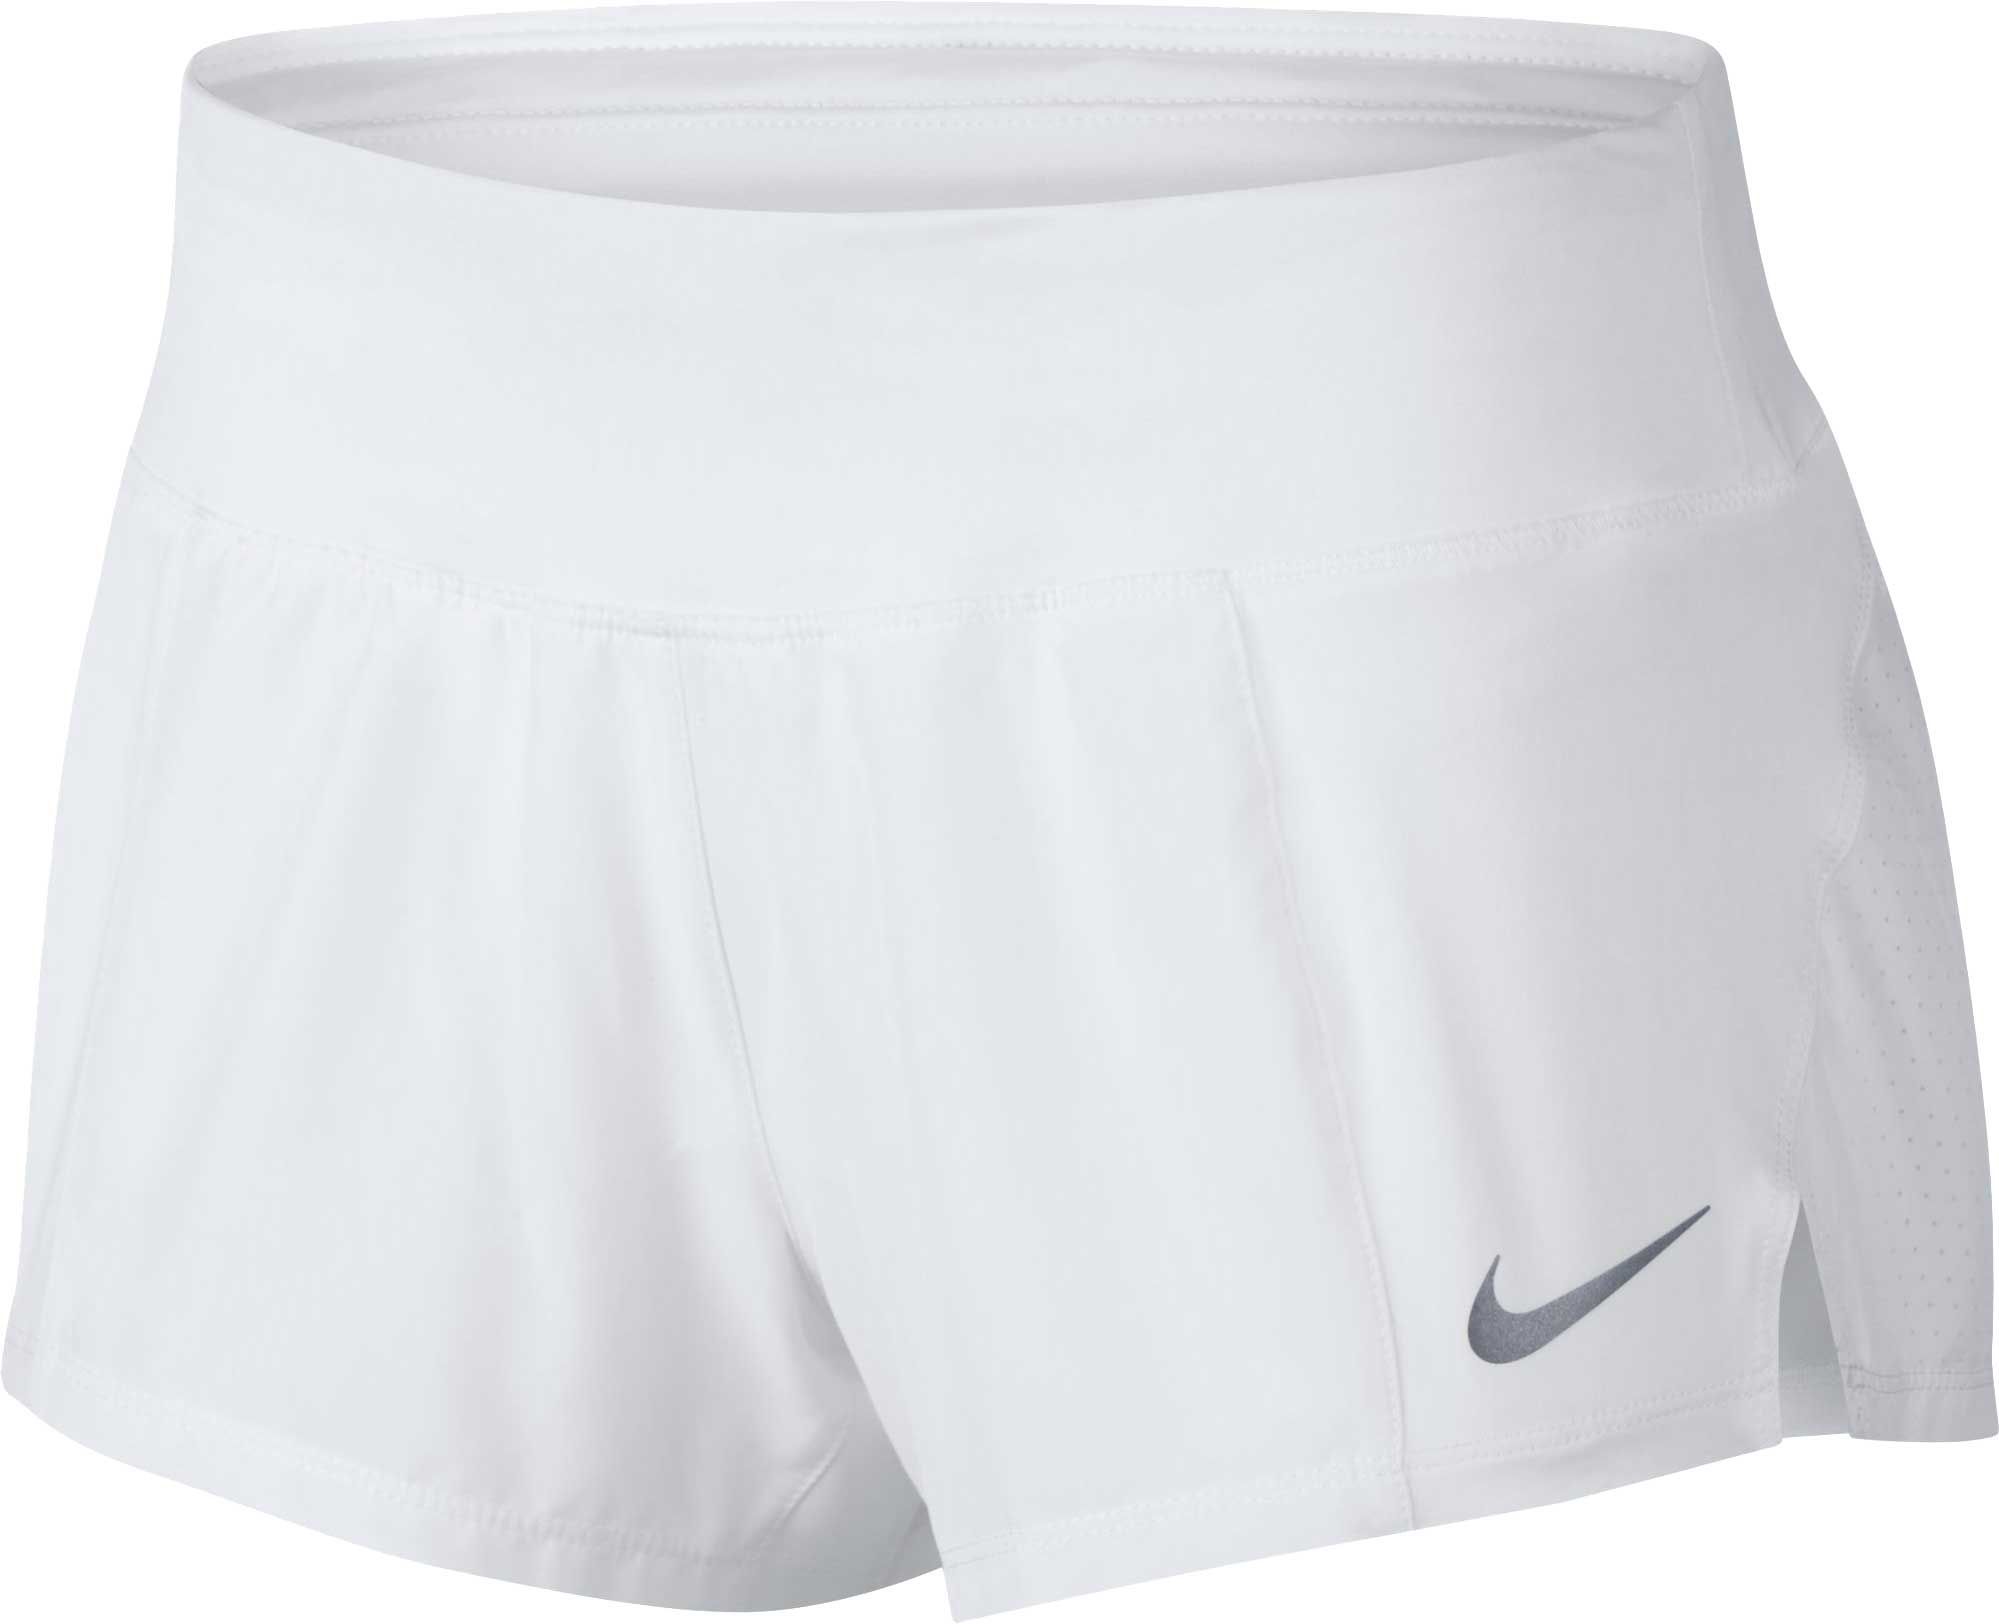 Nike Women's Dry Running Shorts | Dick's Sporting Goods